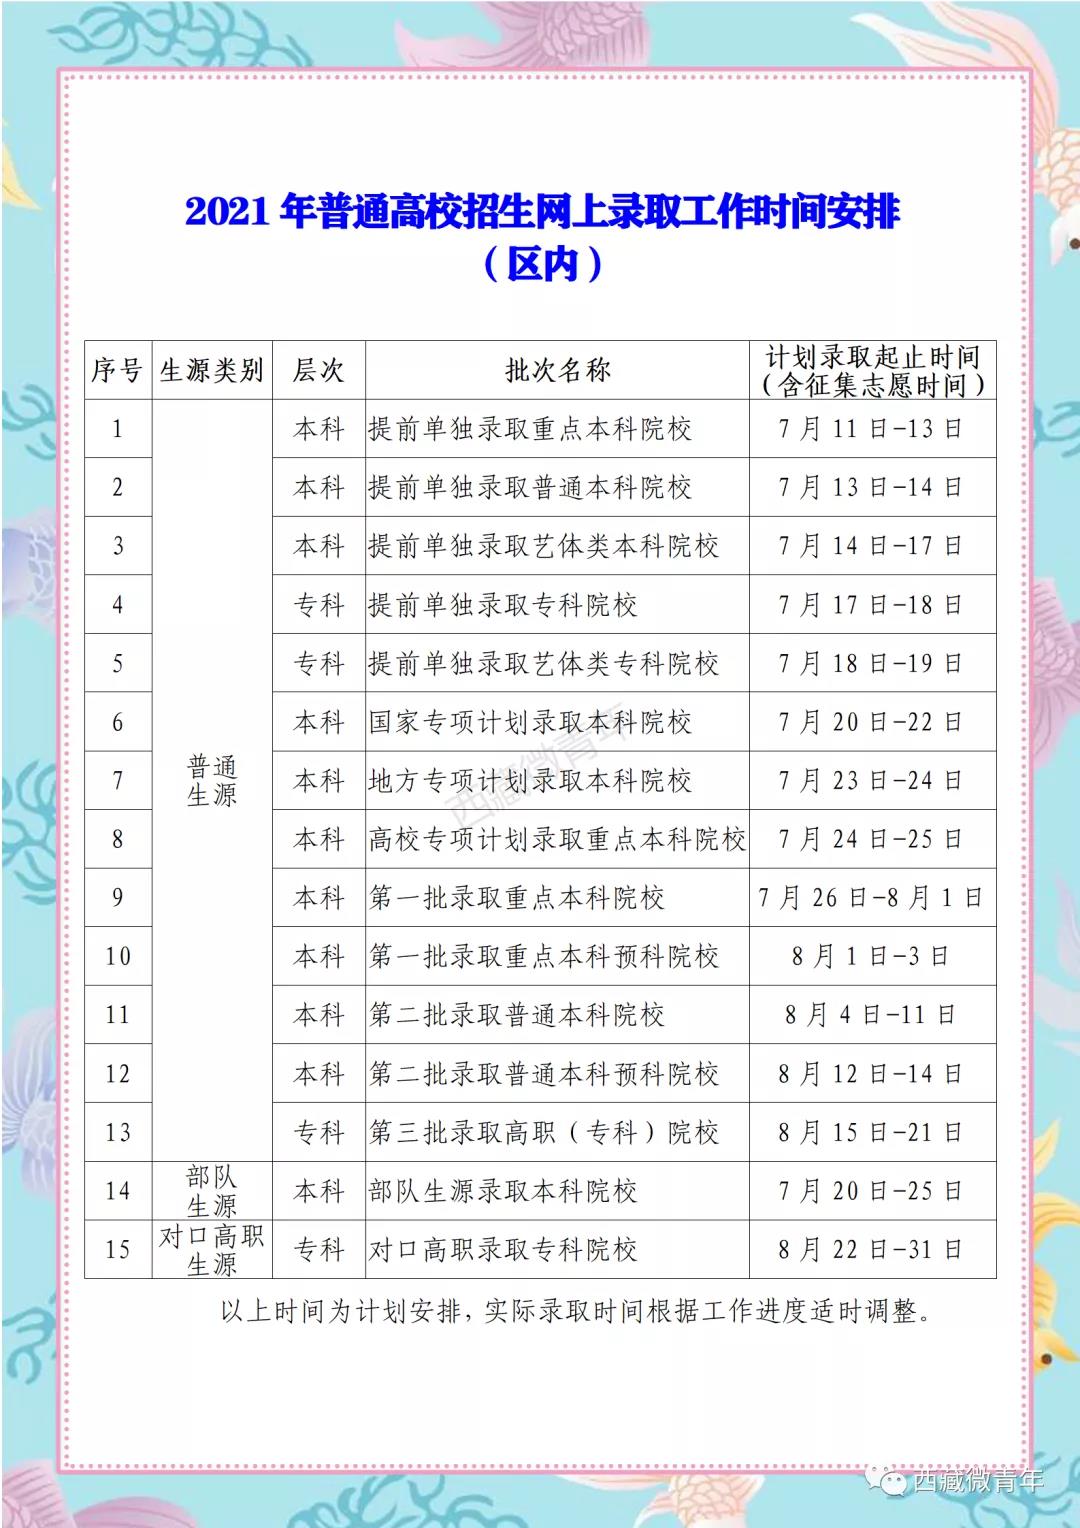 2021西藏高考录取时间安排